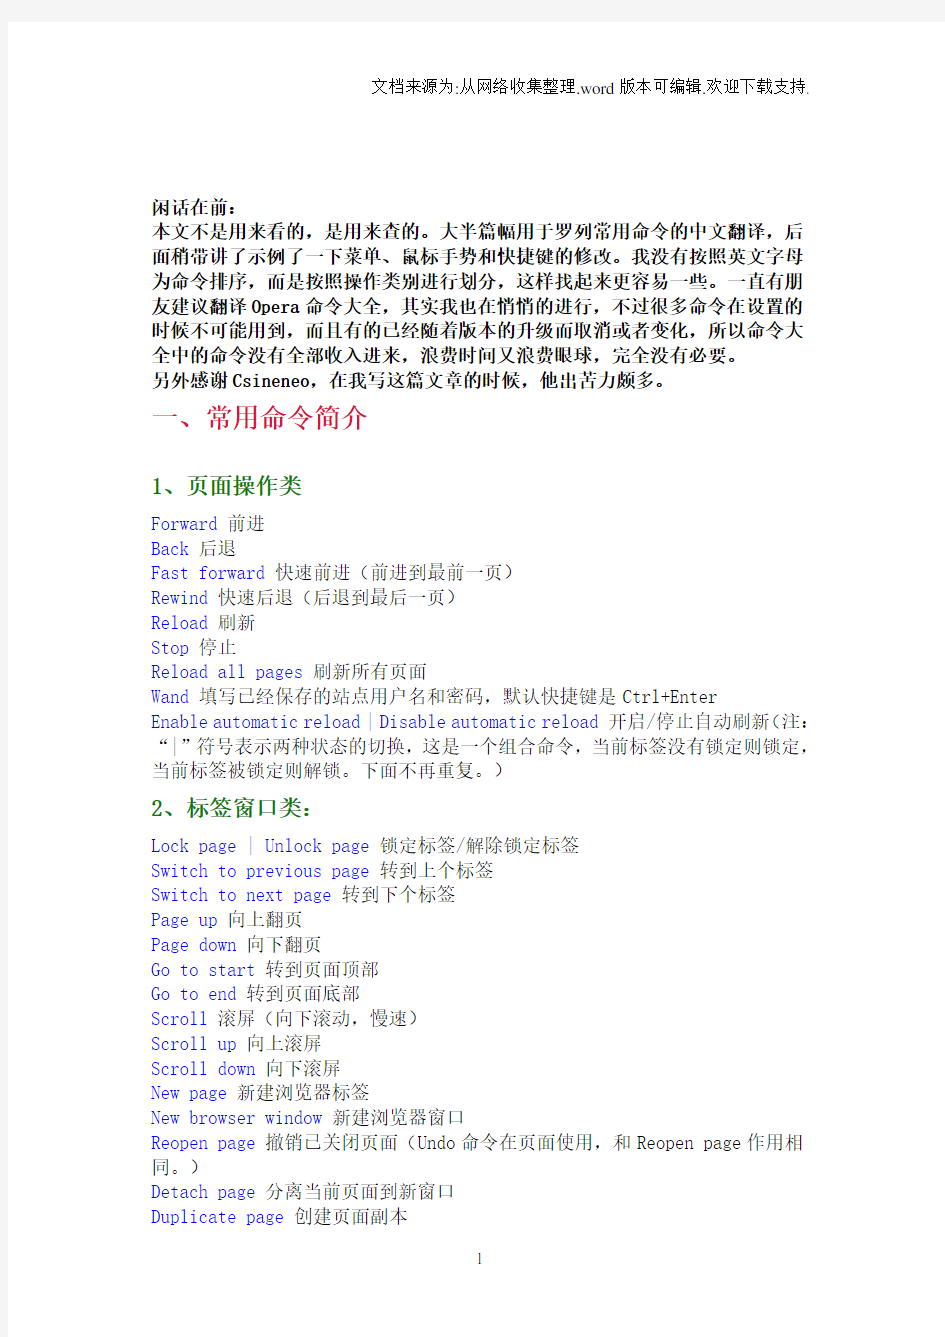 【分享】Opera常用命令中文版含菜单、鼠标手势、快捷键修改入门